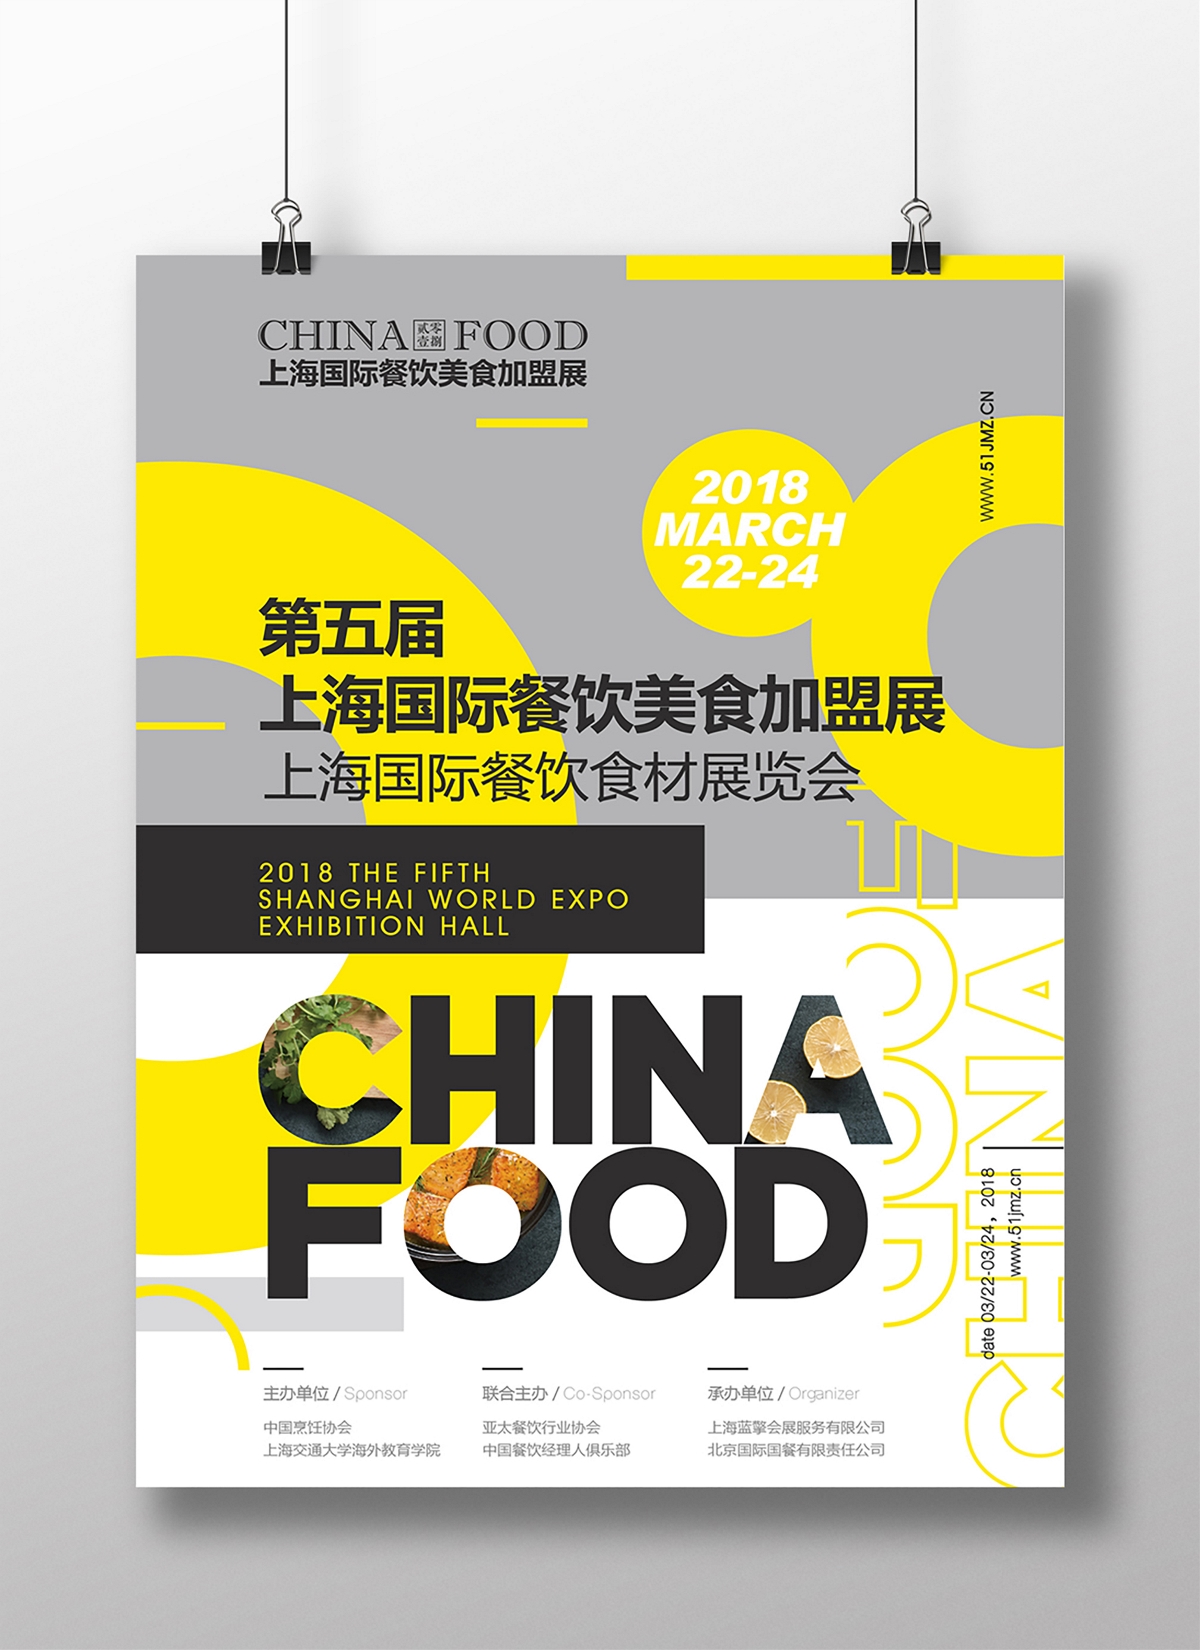 上海国际美食餐饮加盟展品牌VI视觉设计 | 摩尼视觉原创